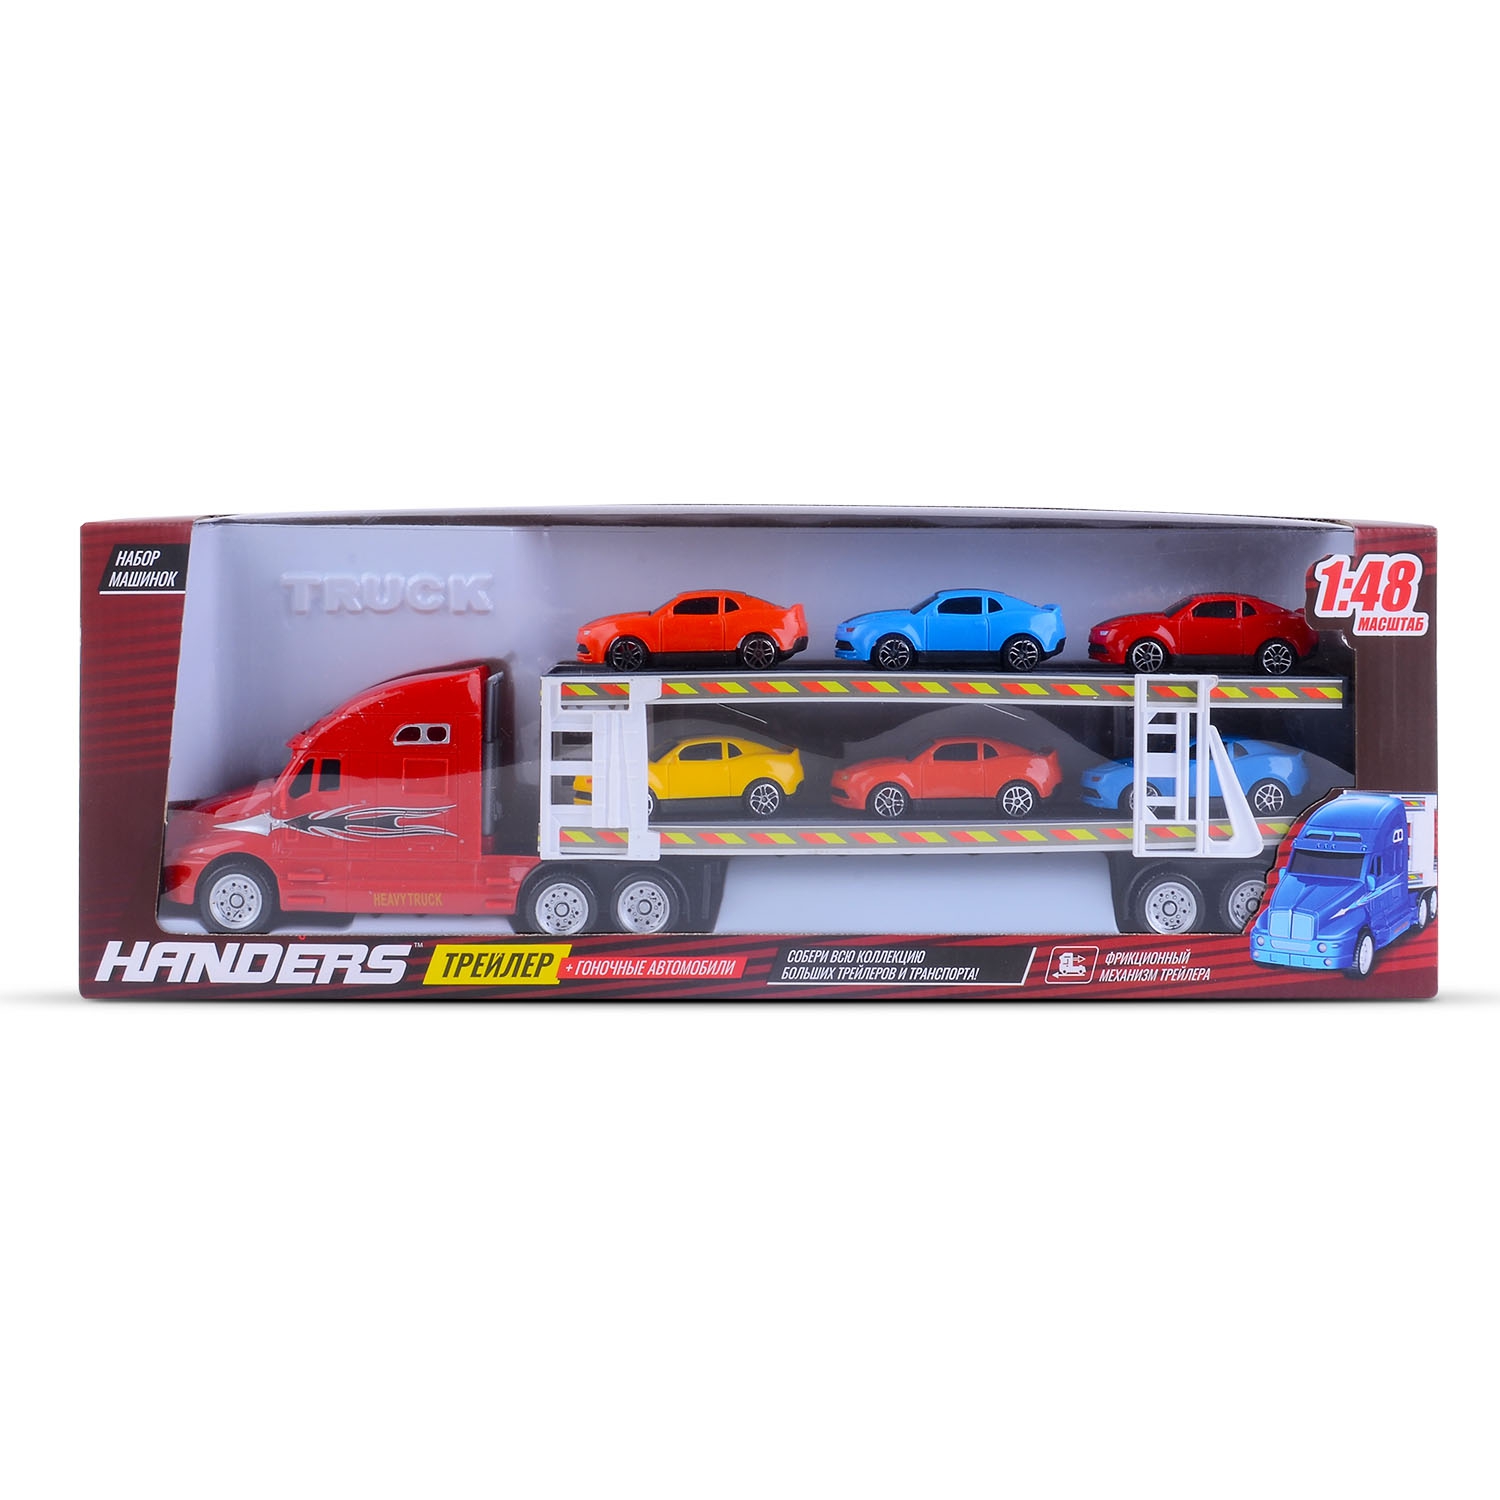 Набор машинок Handers Трейлер: гоночные автомобили (6 маш., инерц. трейлер 39 см, 1:48, красный) (Вид 1)